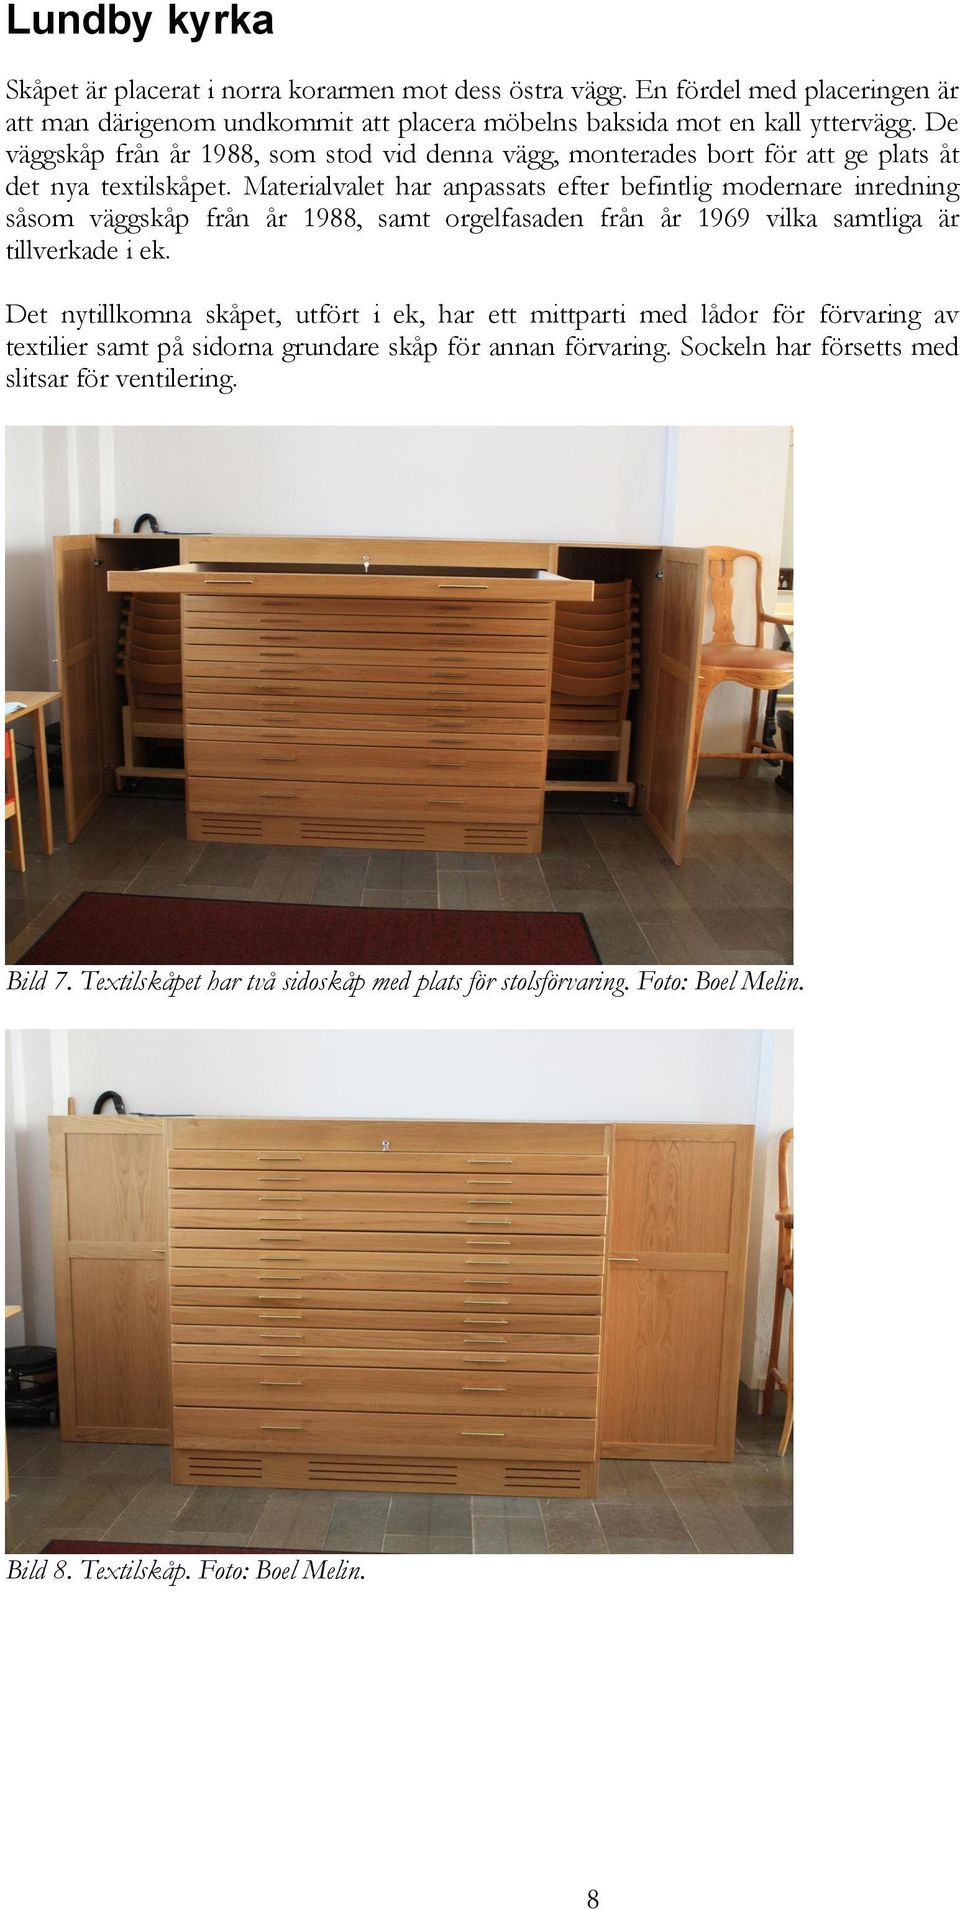 Materialvalet har anpassats efter befintlig modernare inredning såsom väggskåp från år 1988, samt orgelfasaden från år 1969 vilka samtliga är tillverkade i ek.